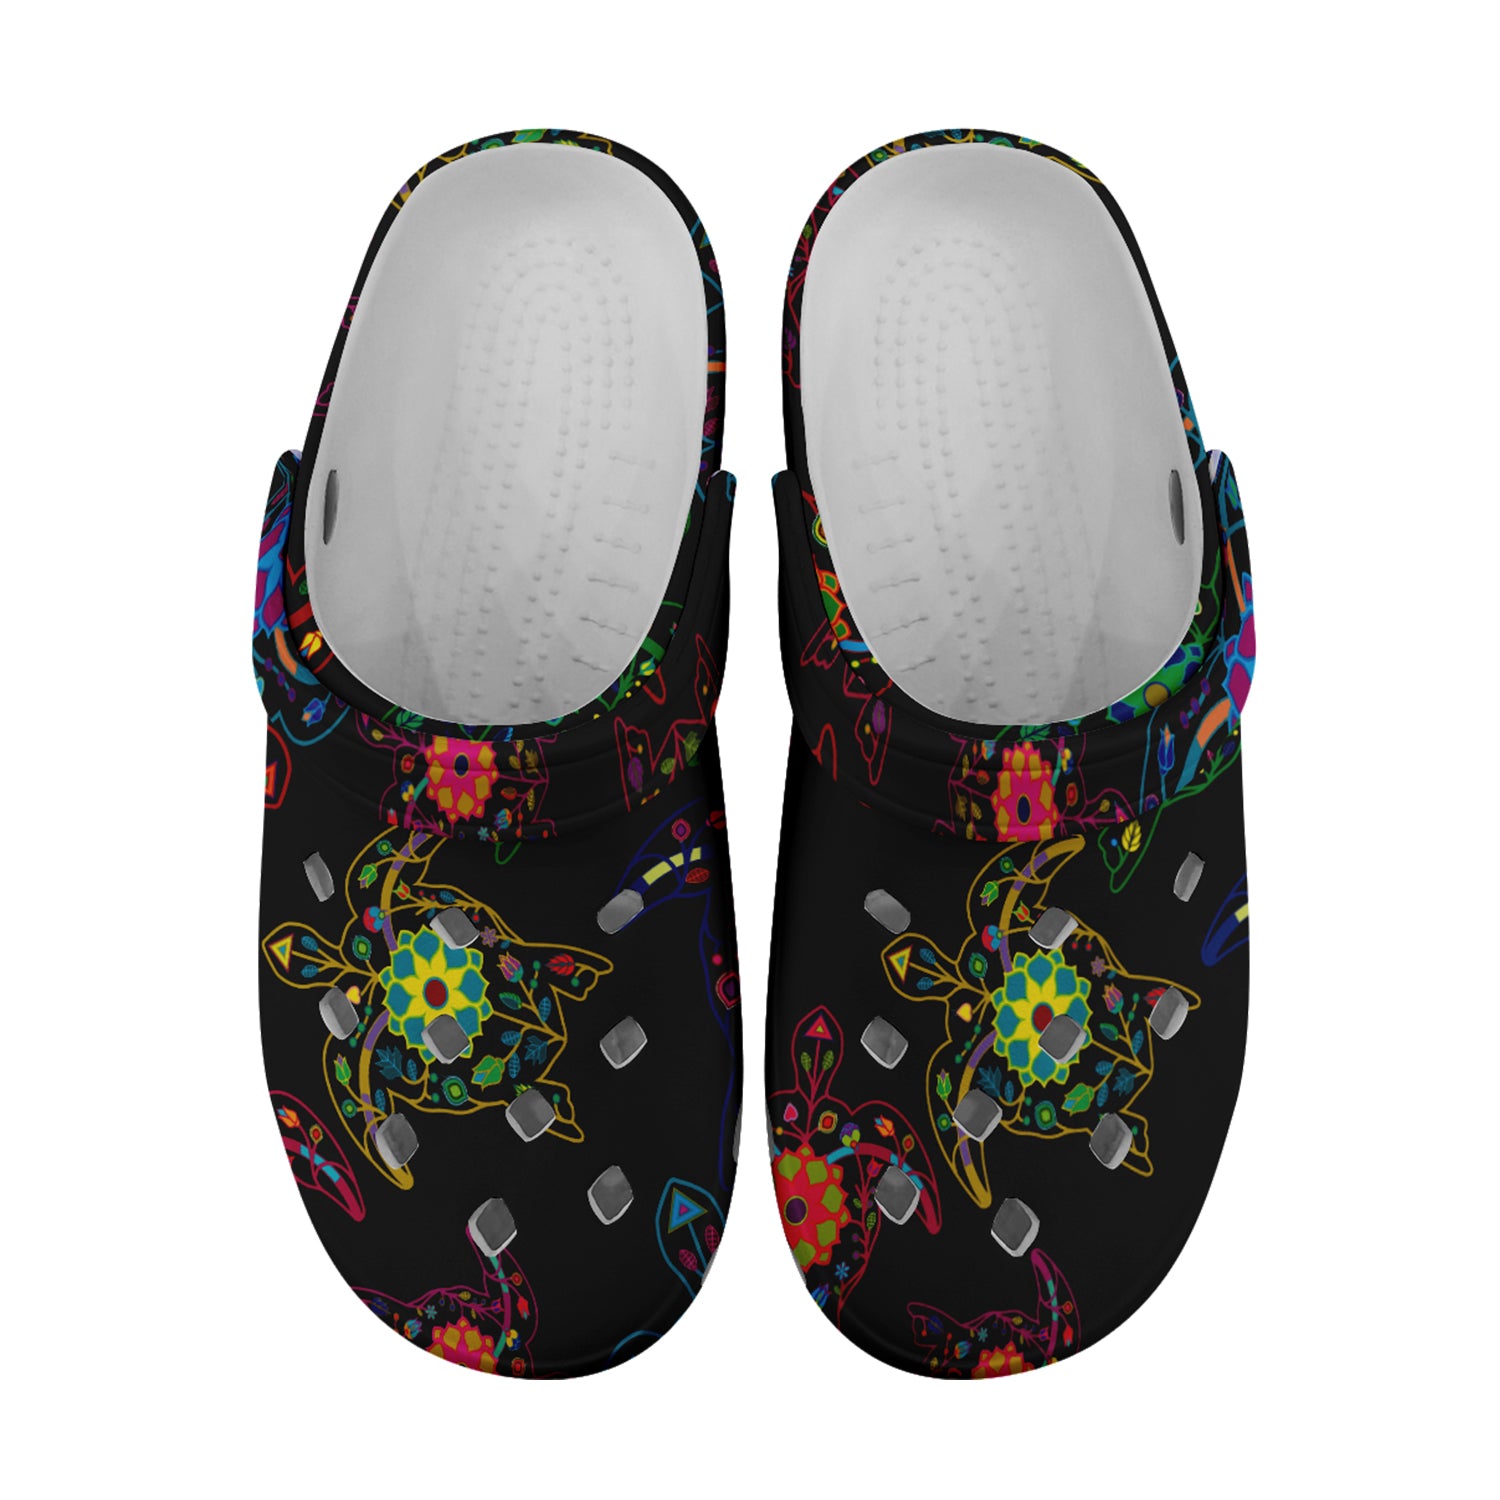 Neon Floral Turtle Muddies Unisex Clog Shoes